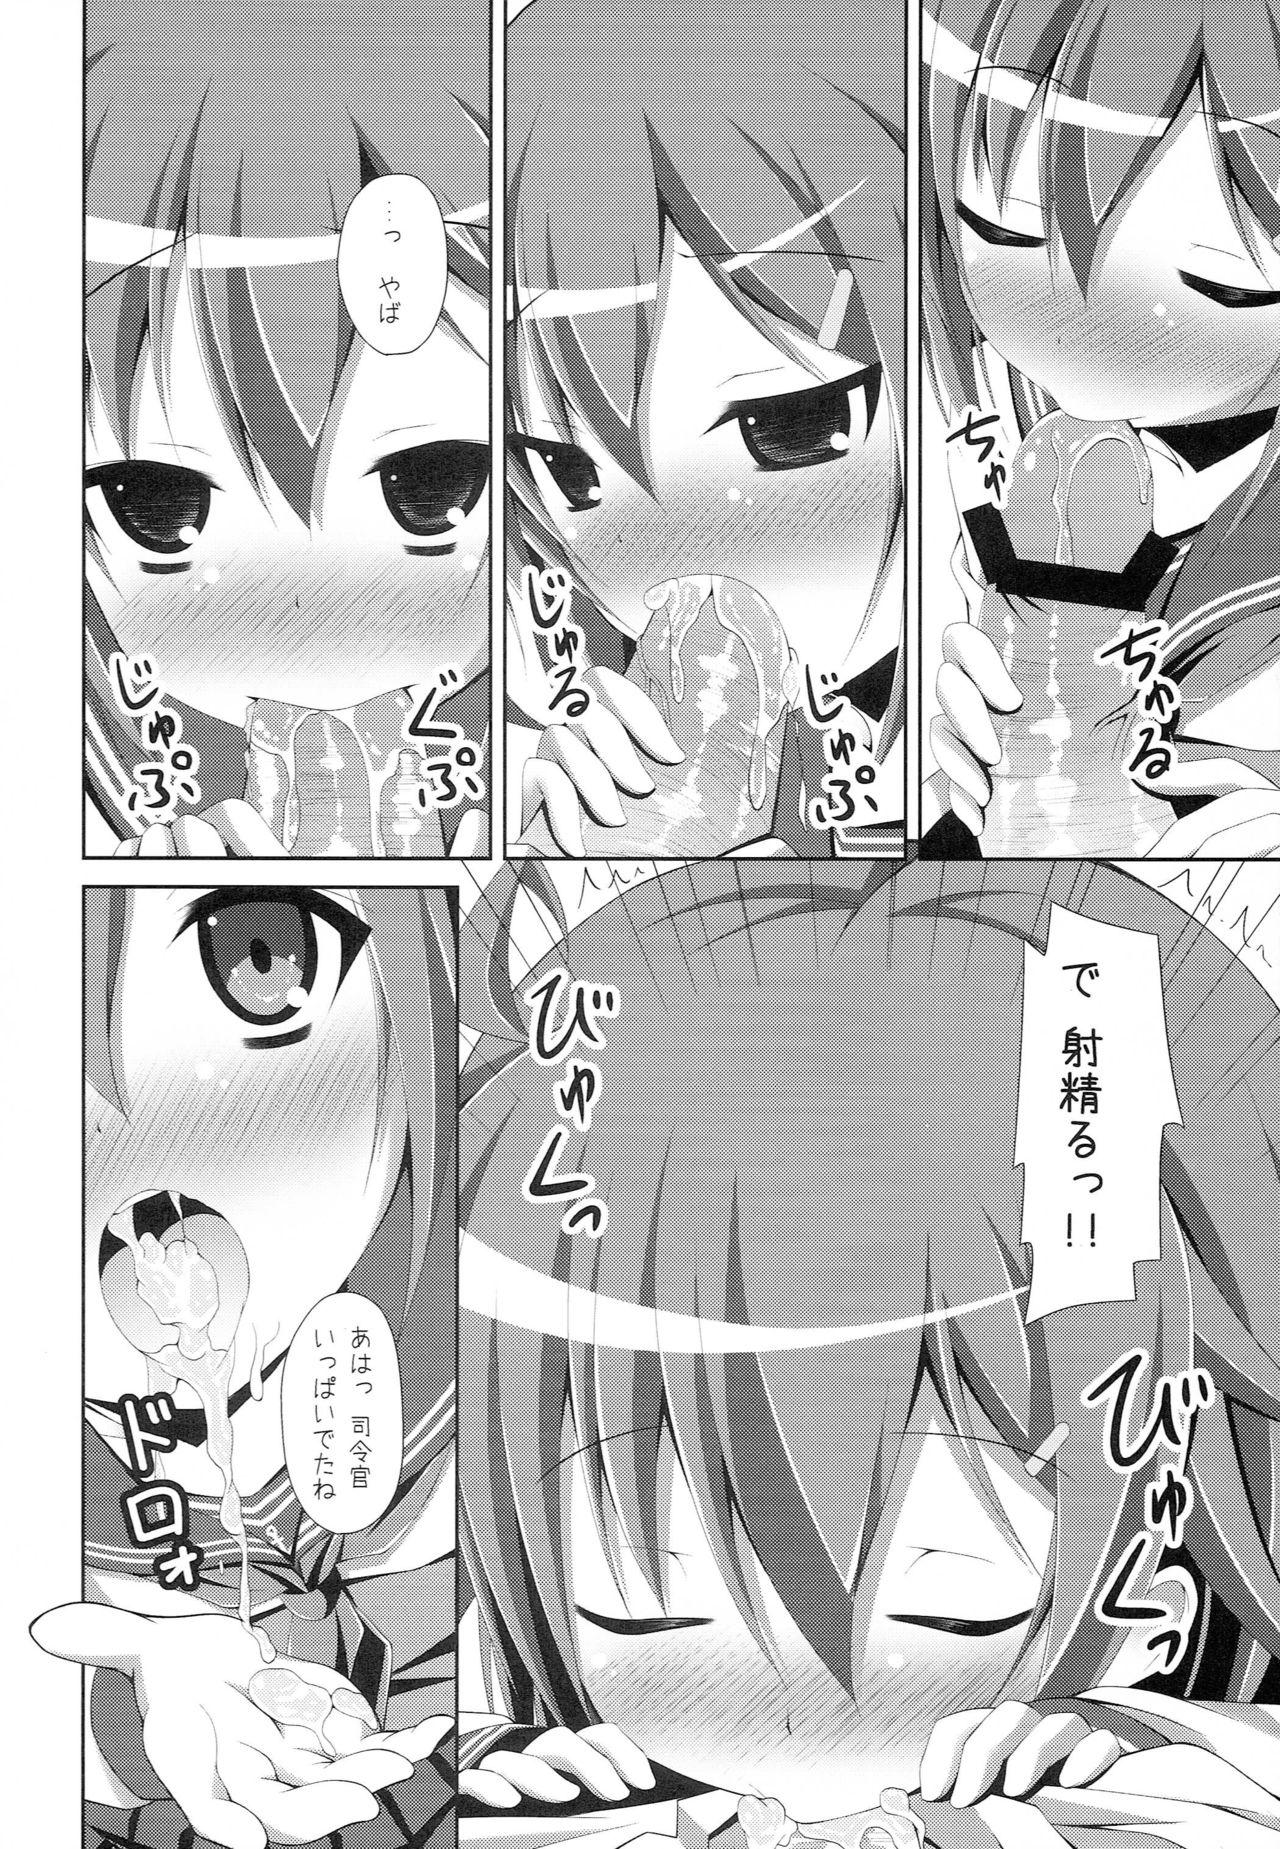 Solo Female "Shire-kan Ecchi Shiyo?" "Shireikan to Nara Watashi mo..." - Kantai collection Super Hot Porn - Page 7